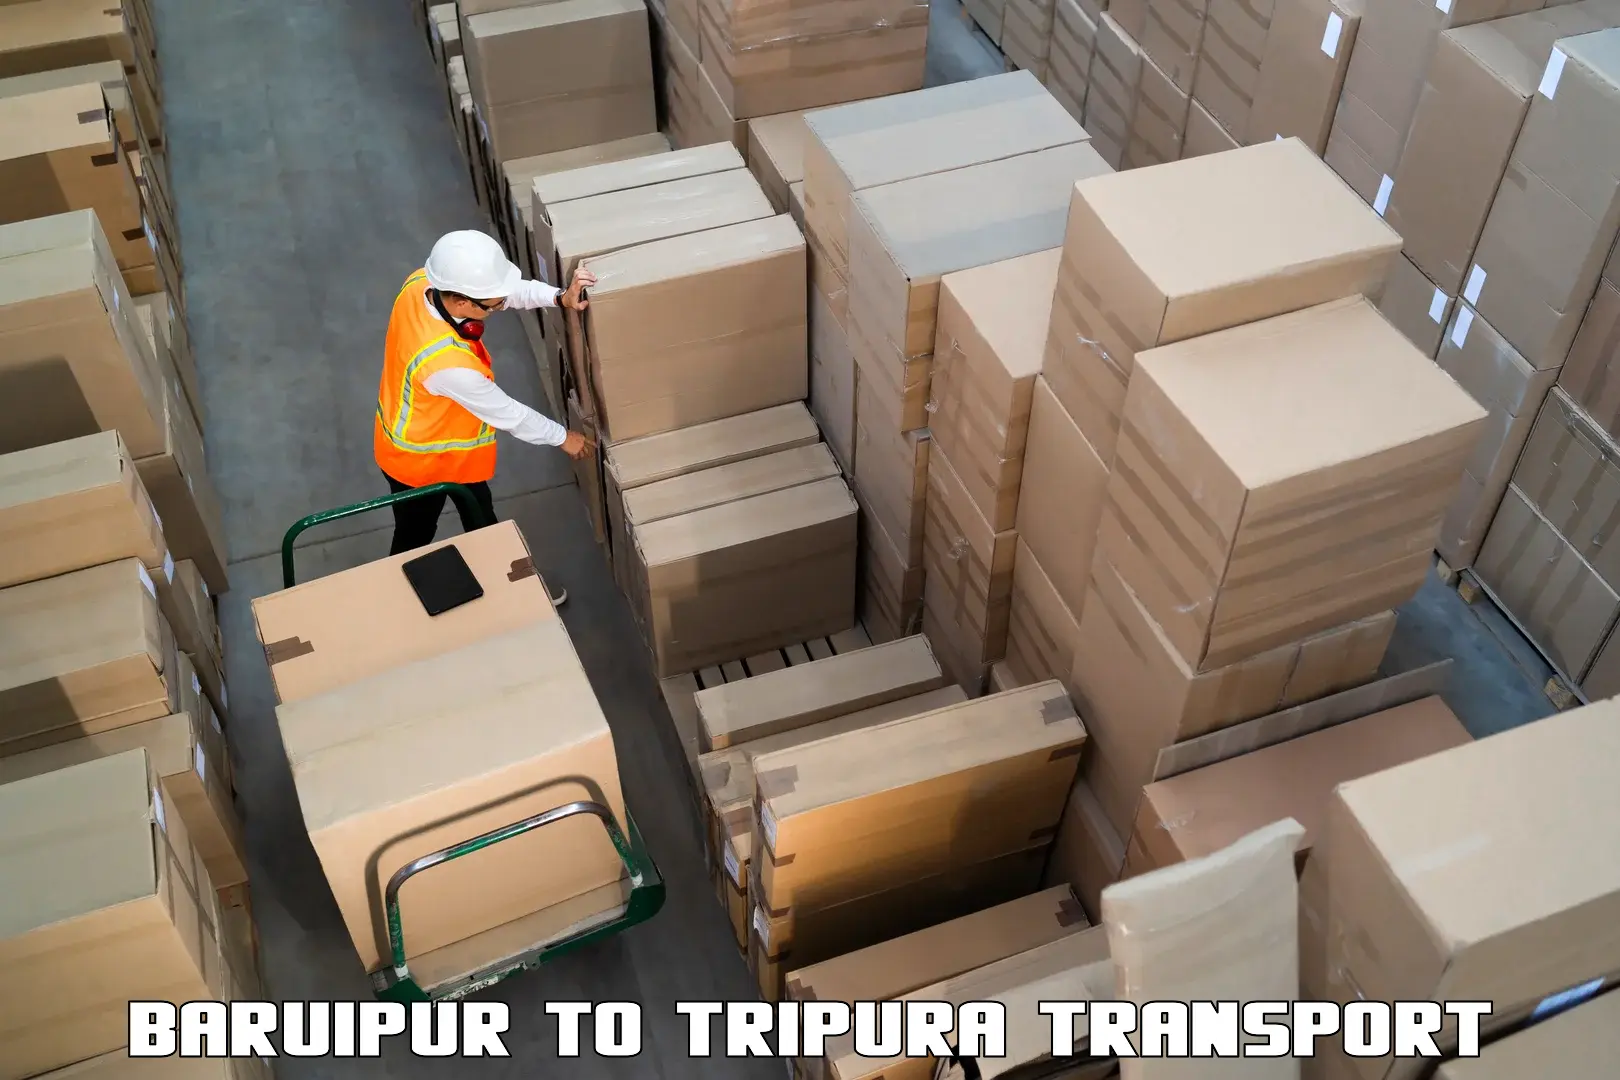 Road transport online services Baruipur to Sonamura